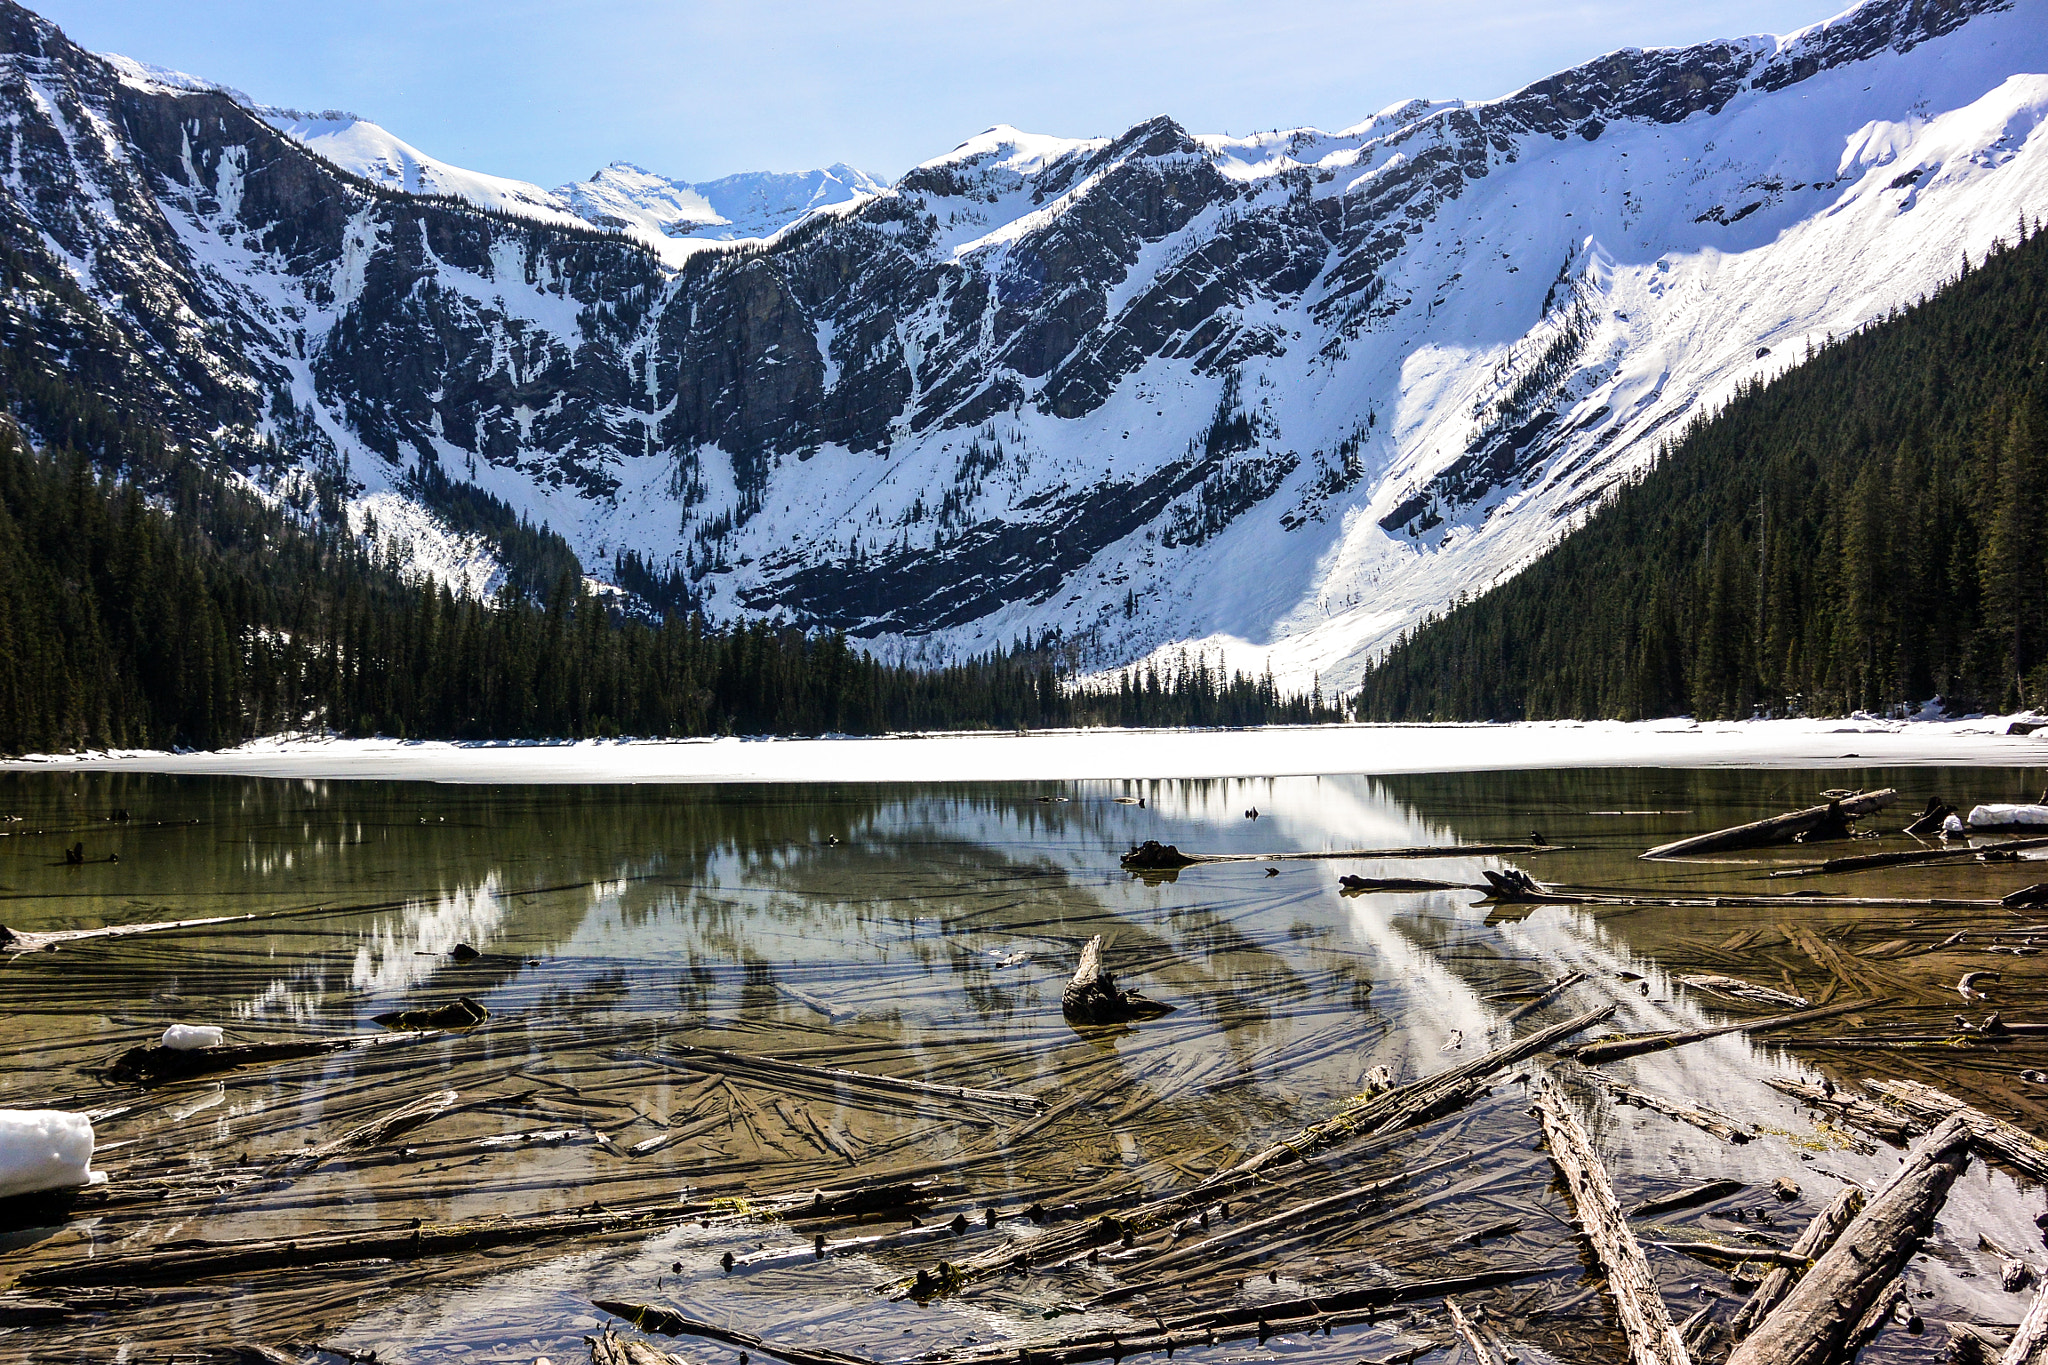 Nikon 1 AW1 sample photo. Spring at avalanche lake photography